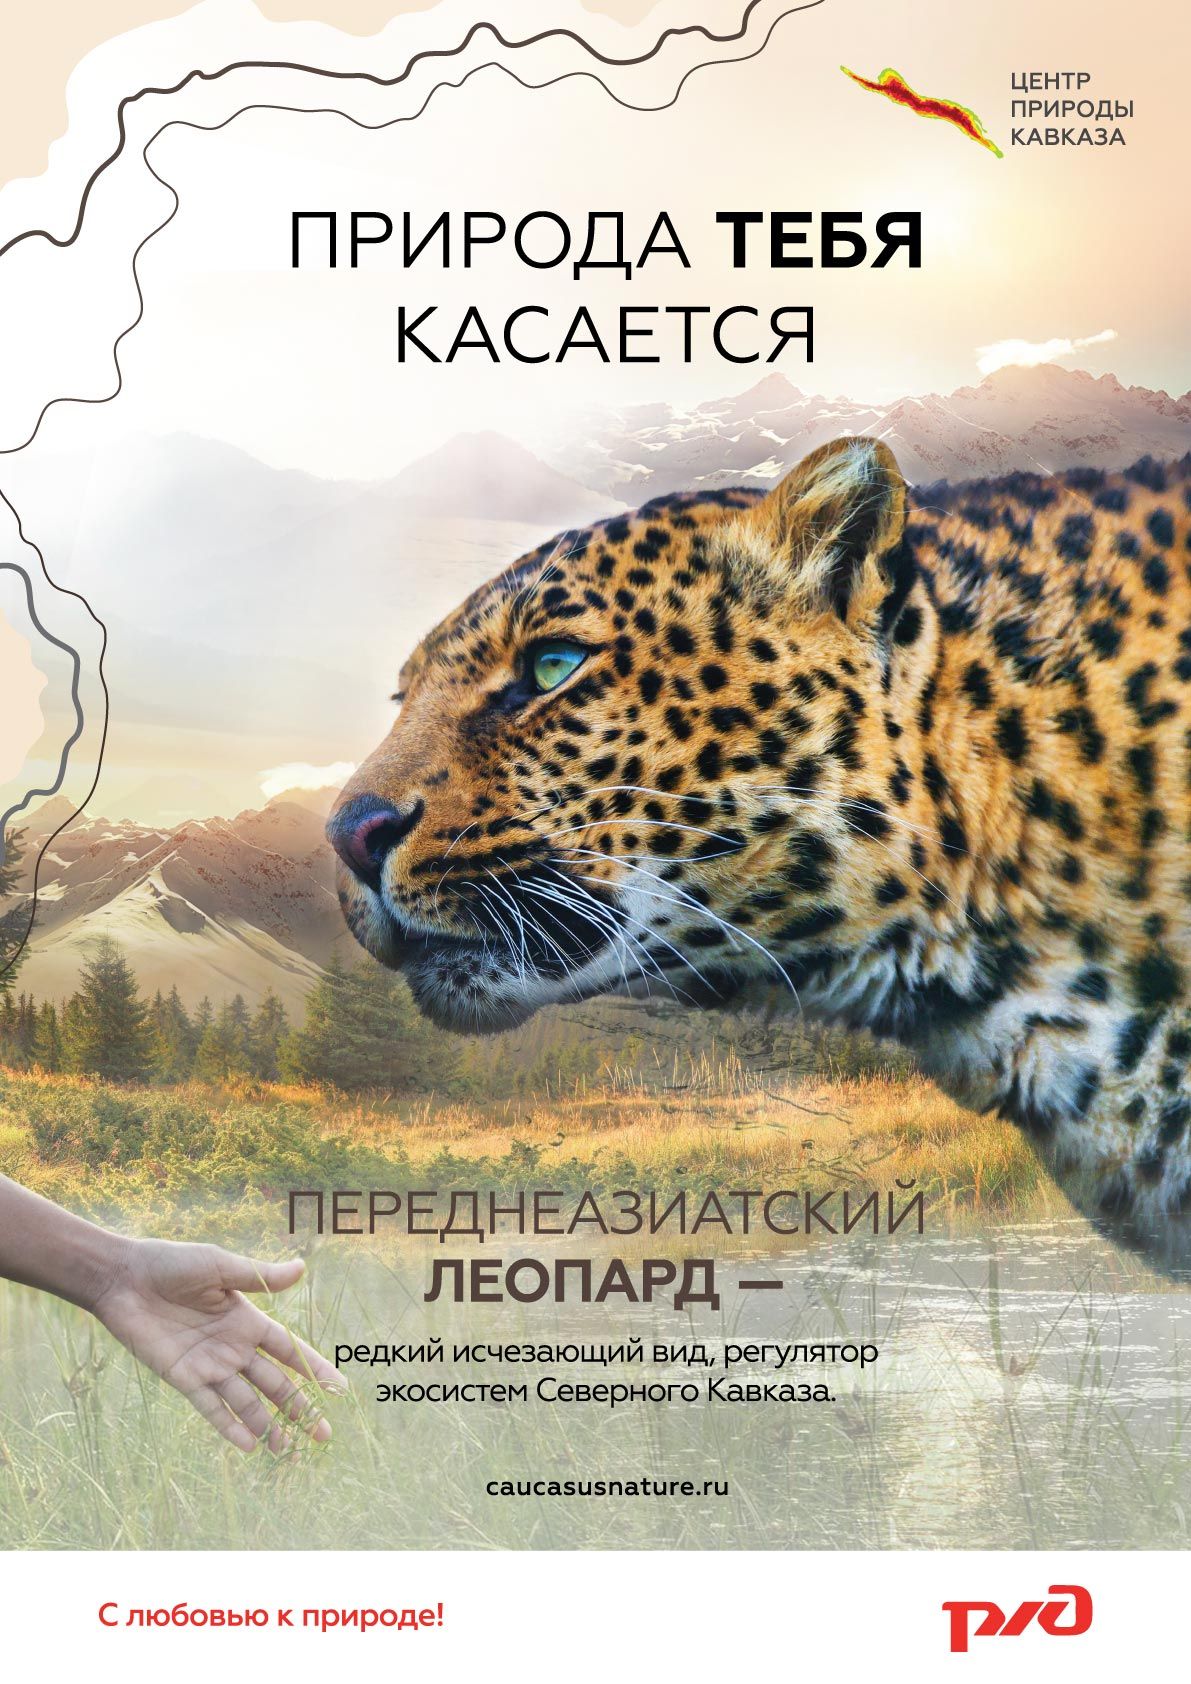 В поездах РЖД расскажут о редких видах животных и растений Кавказа